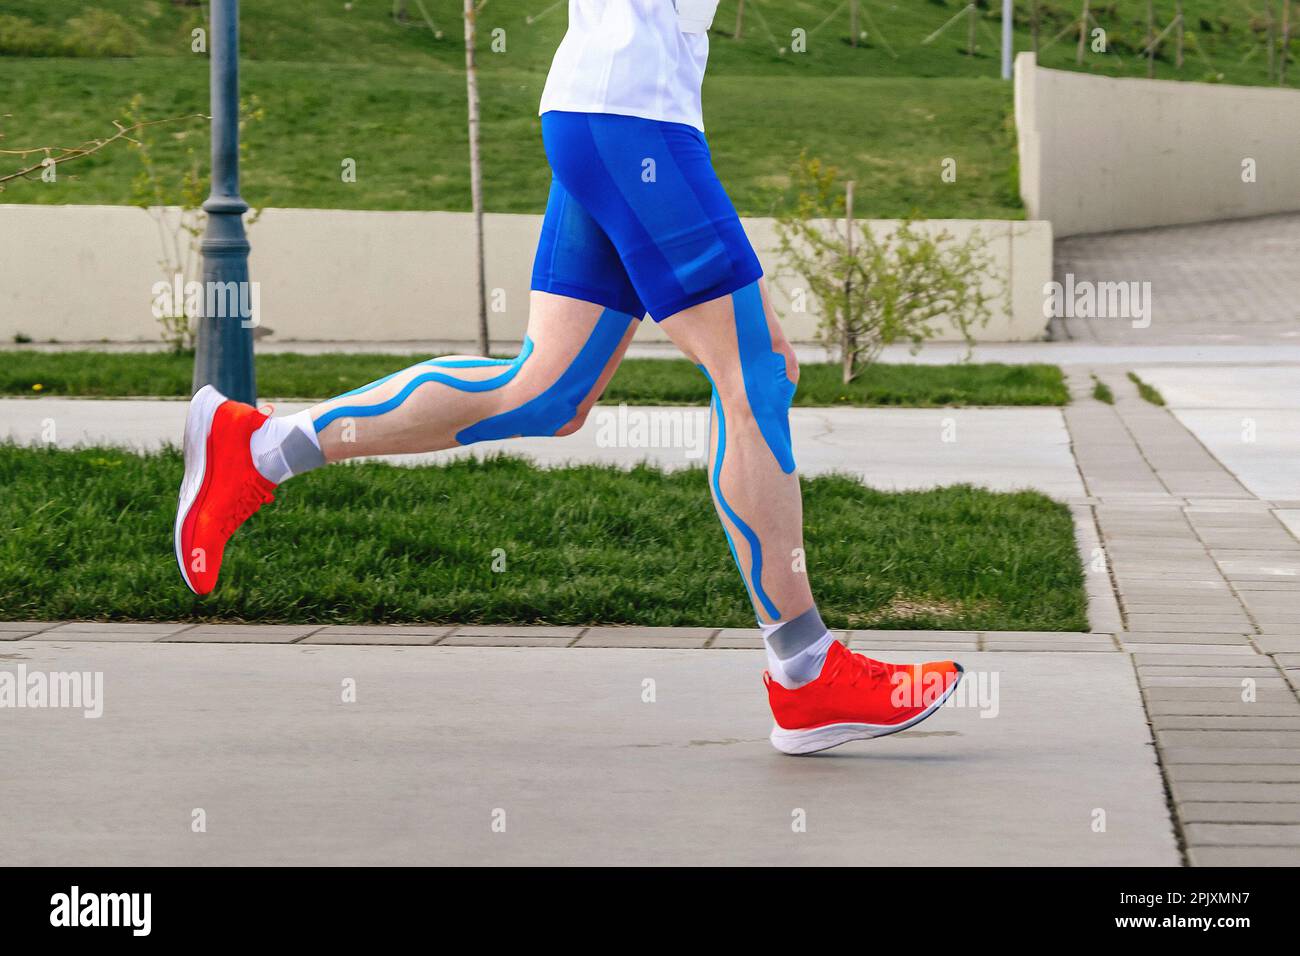 Beine Läufer Athlet in blauer Kinesiotaping an Oberschenkeln, Wadenmuskeln und Knien, Marathon-Rennen Ausdauersport-Wettkampf Stockfoto